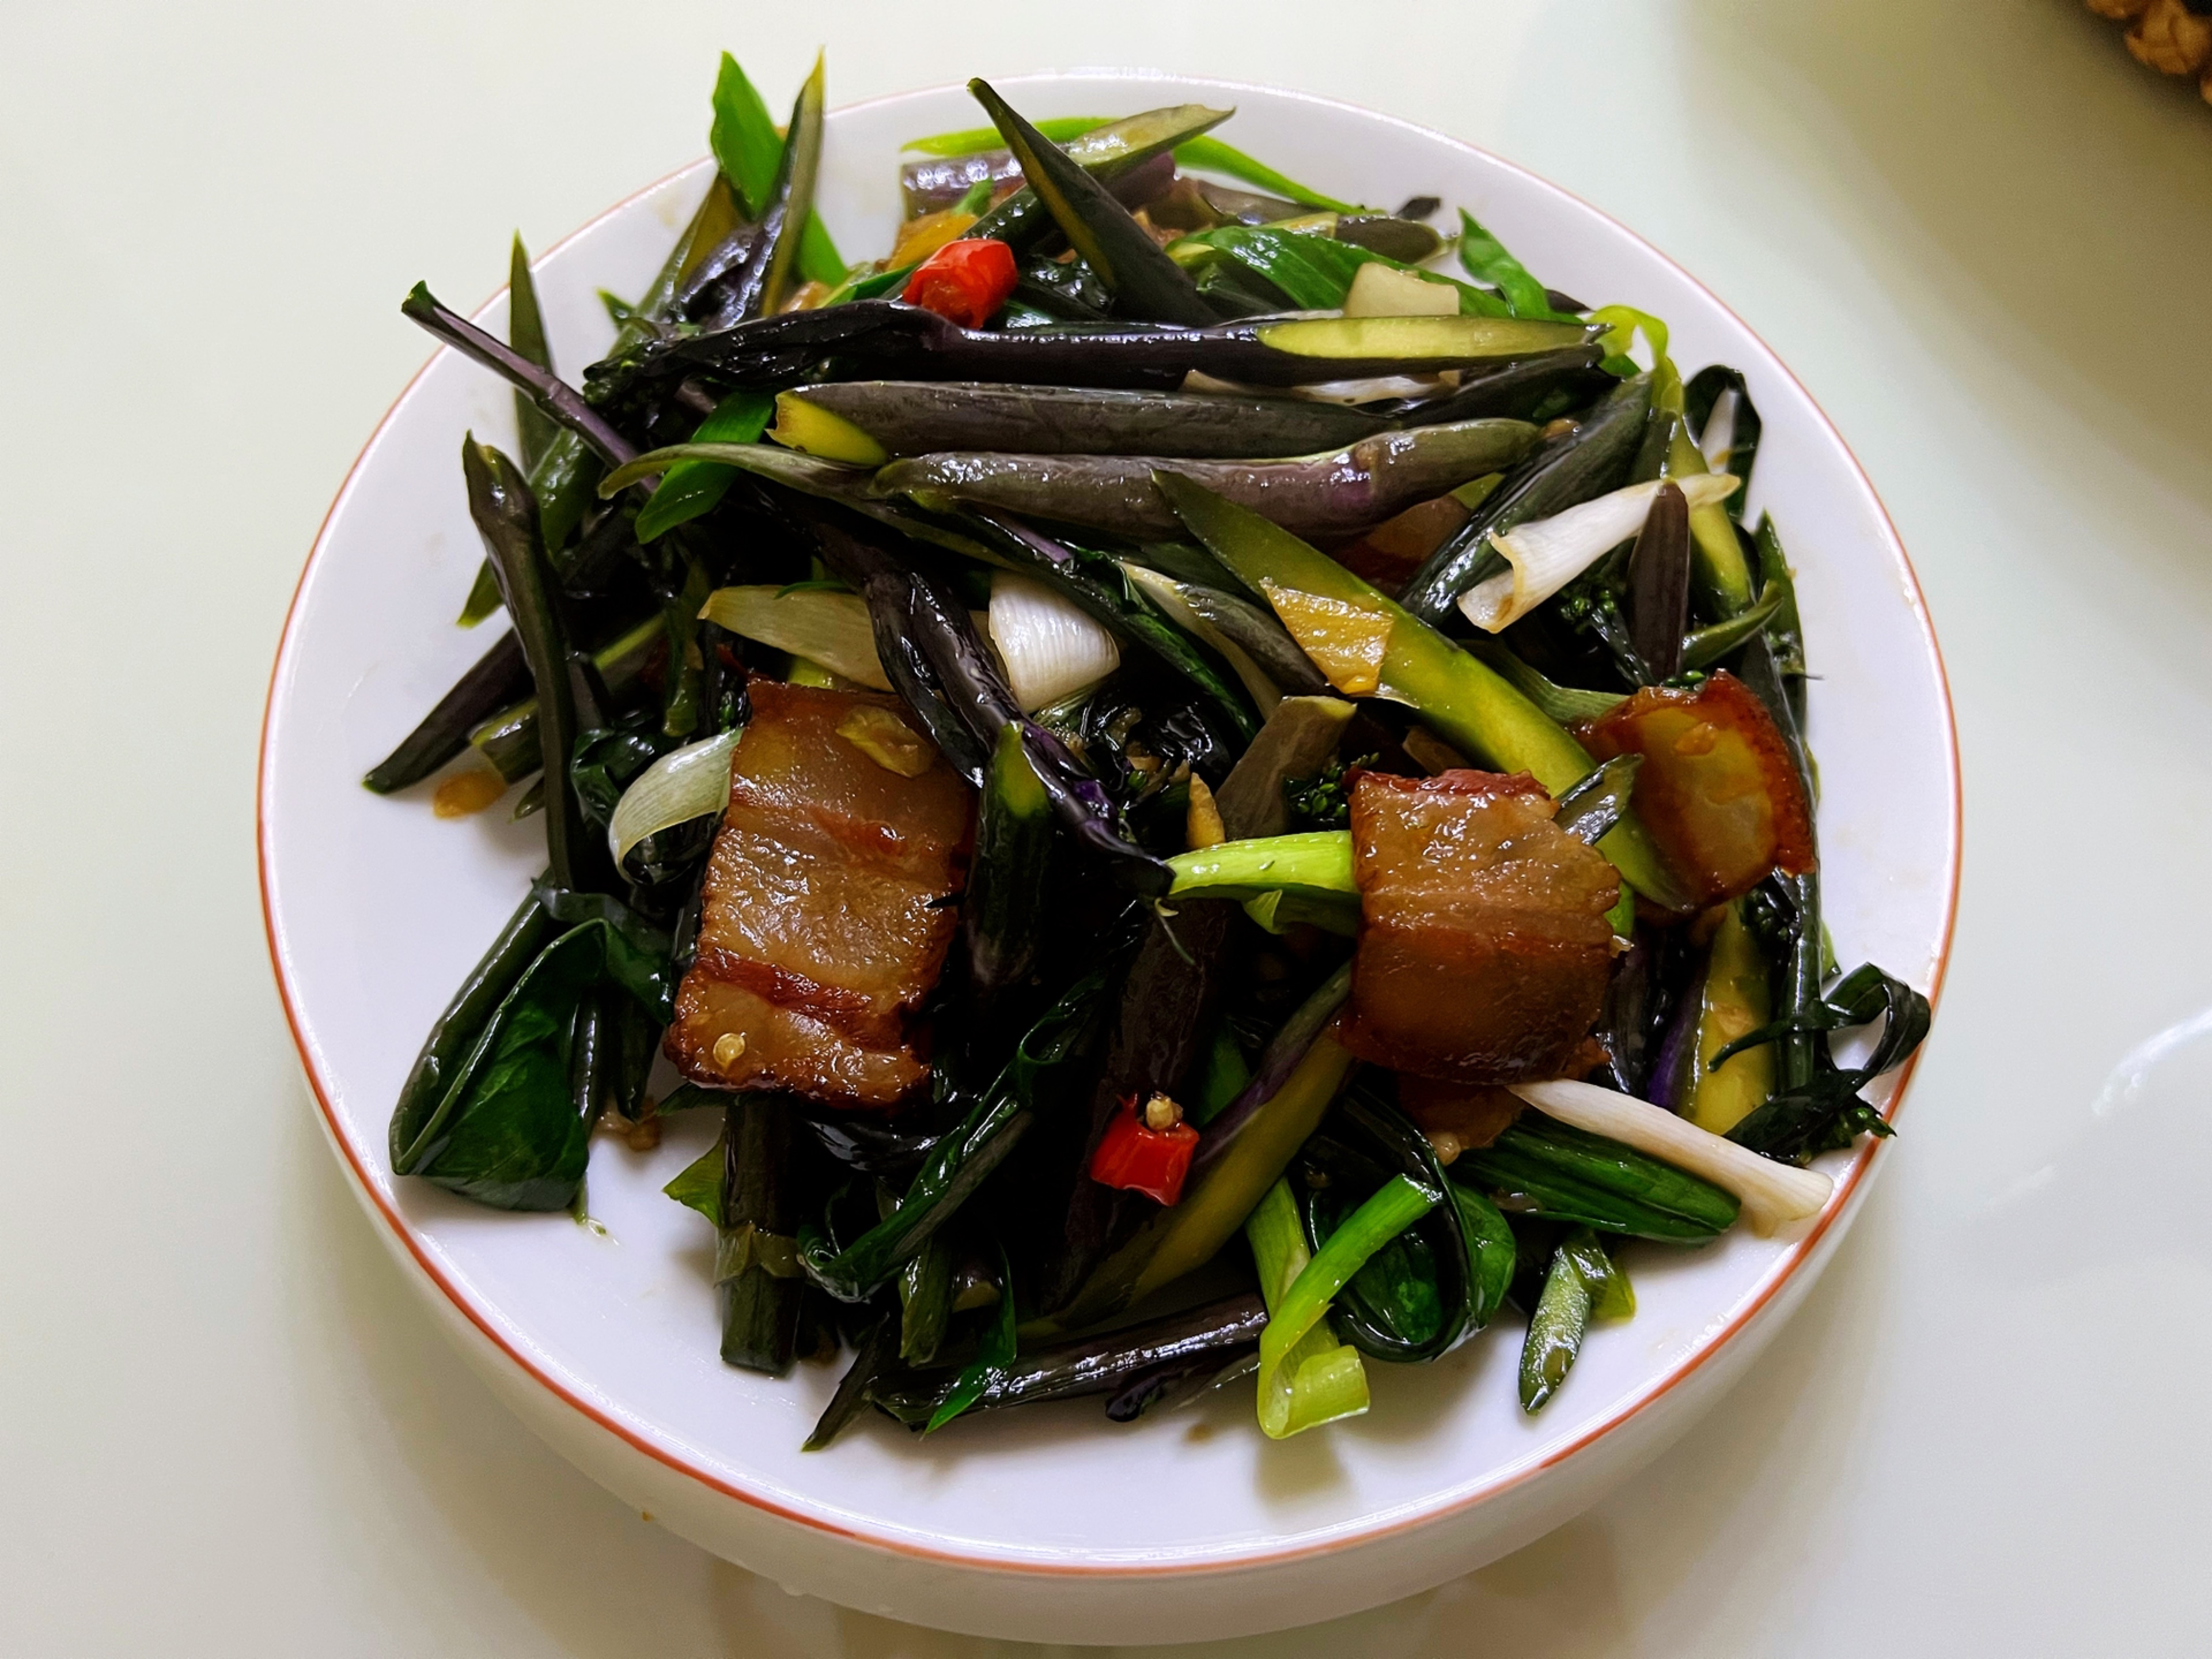 昔日皇家才能吃上的美食——爆炒红菜苔 一年只有两个月可以吃到它__万家热线-安徽门户网站